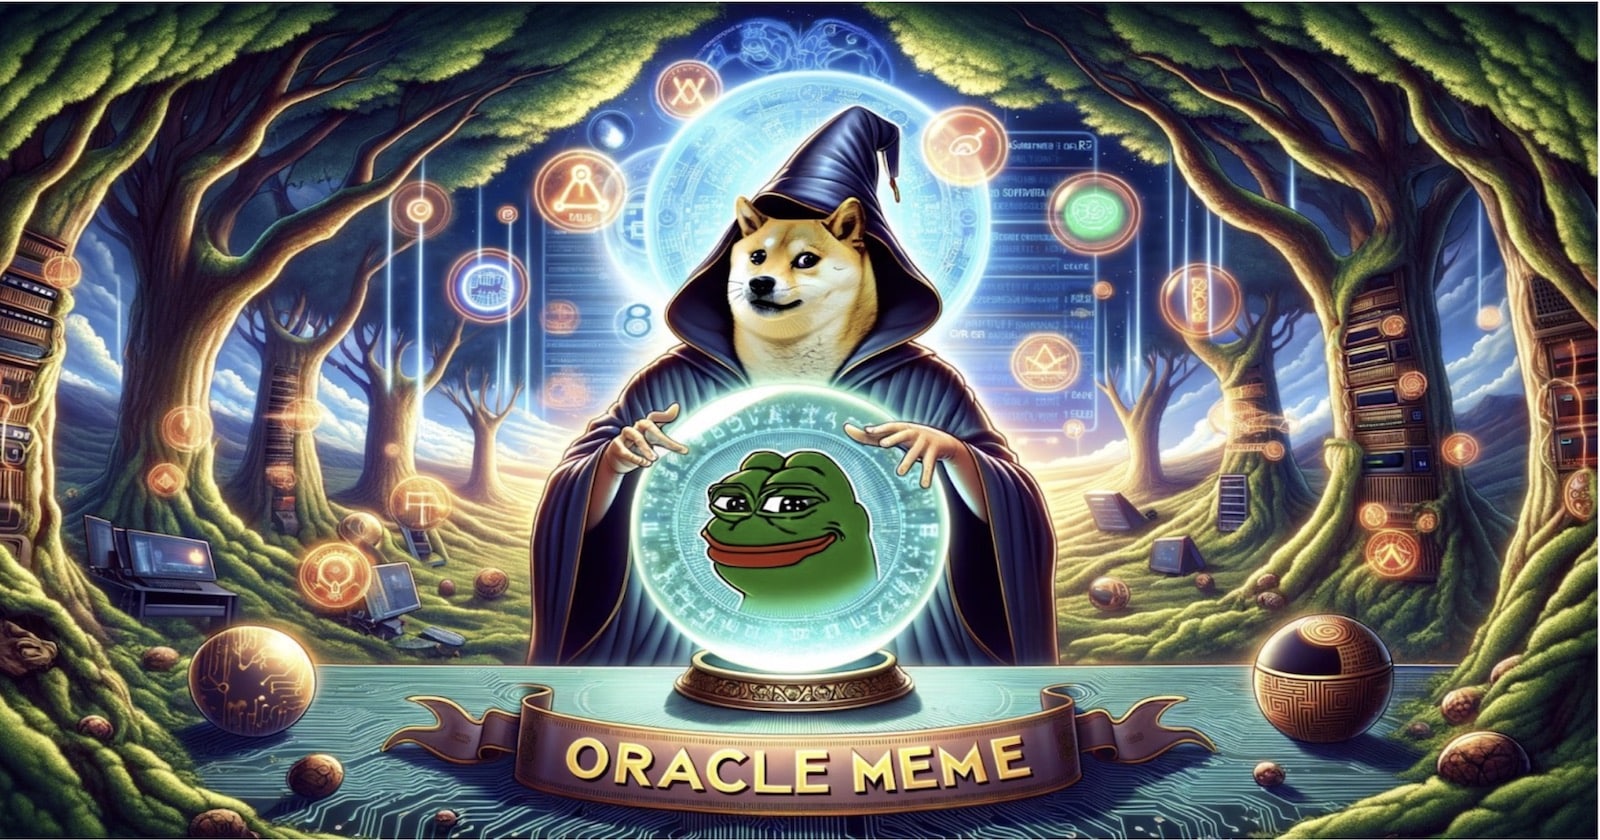 pré-venda Oracle Meme pode trazer lucros